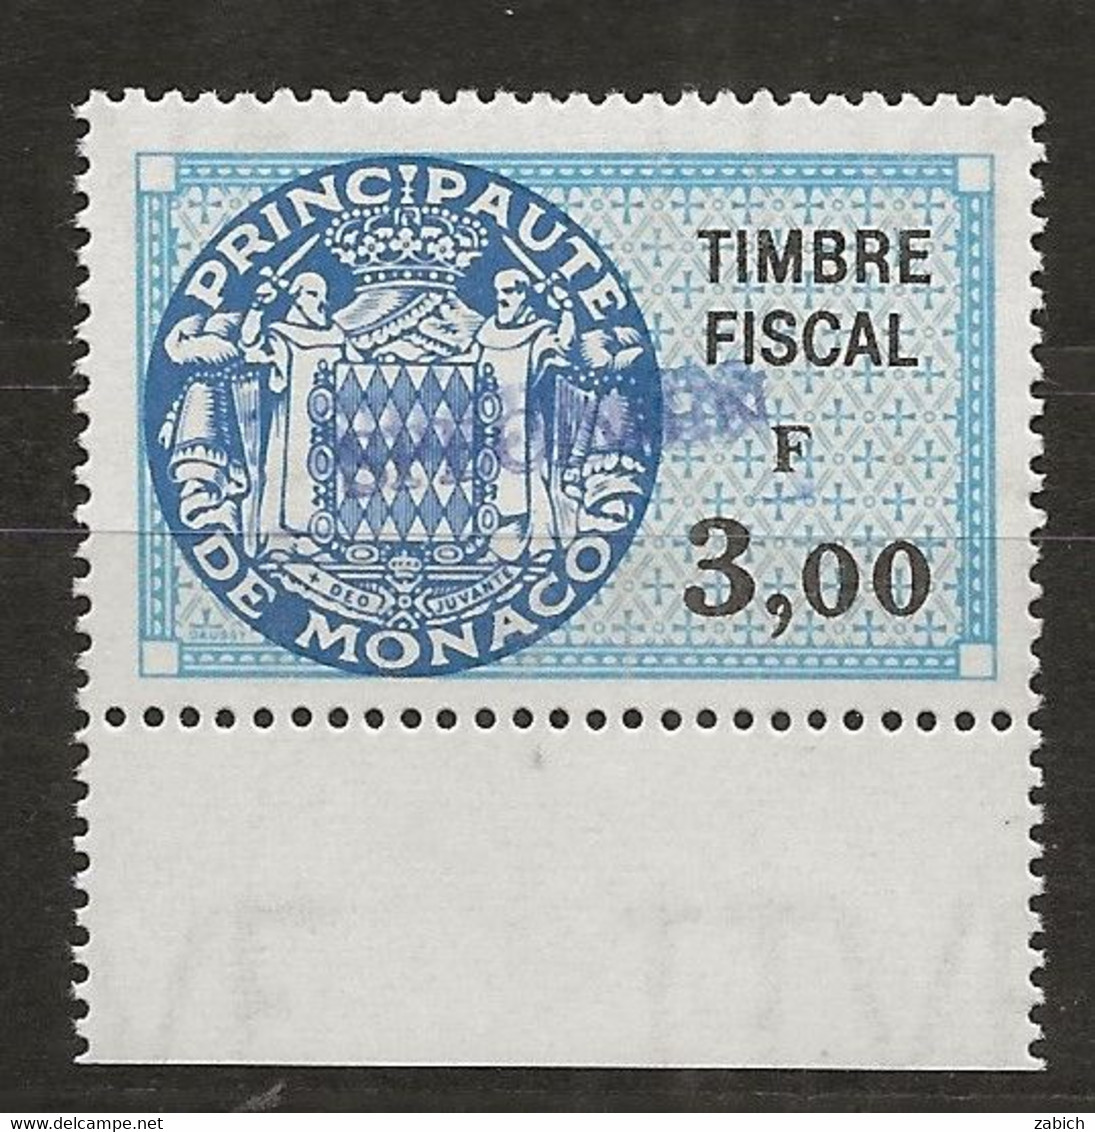 TIMBRES FISCAUX DE MONACO SERIE UNIFIEE N° 91 3 F Bleu Rare Surchargé Spécimen Neuf Gomme Mnh (**) - Fiscali